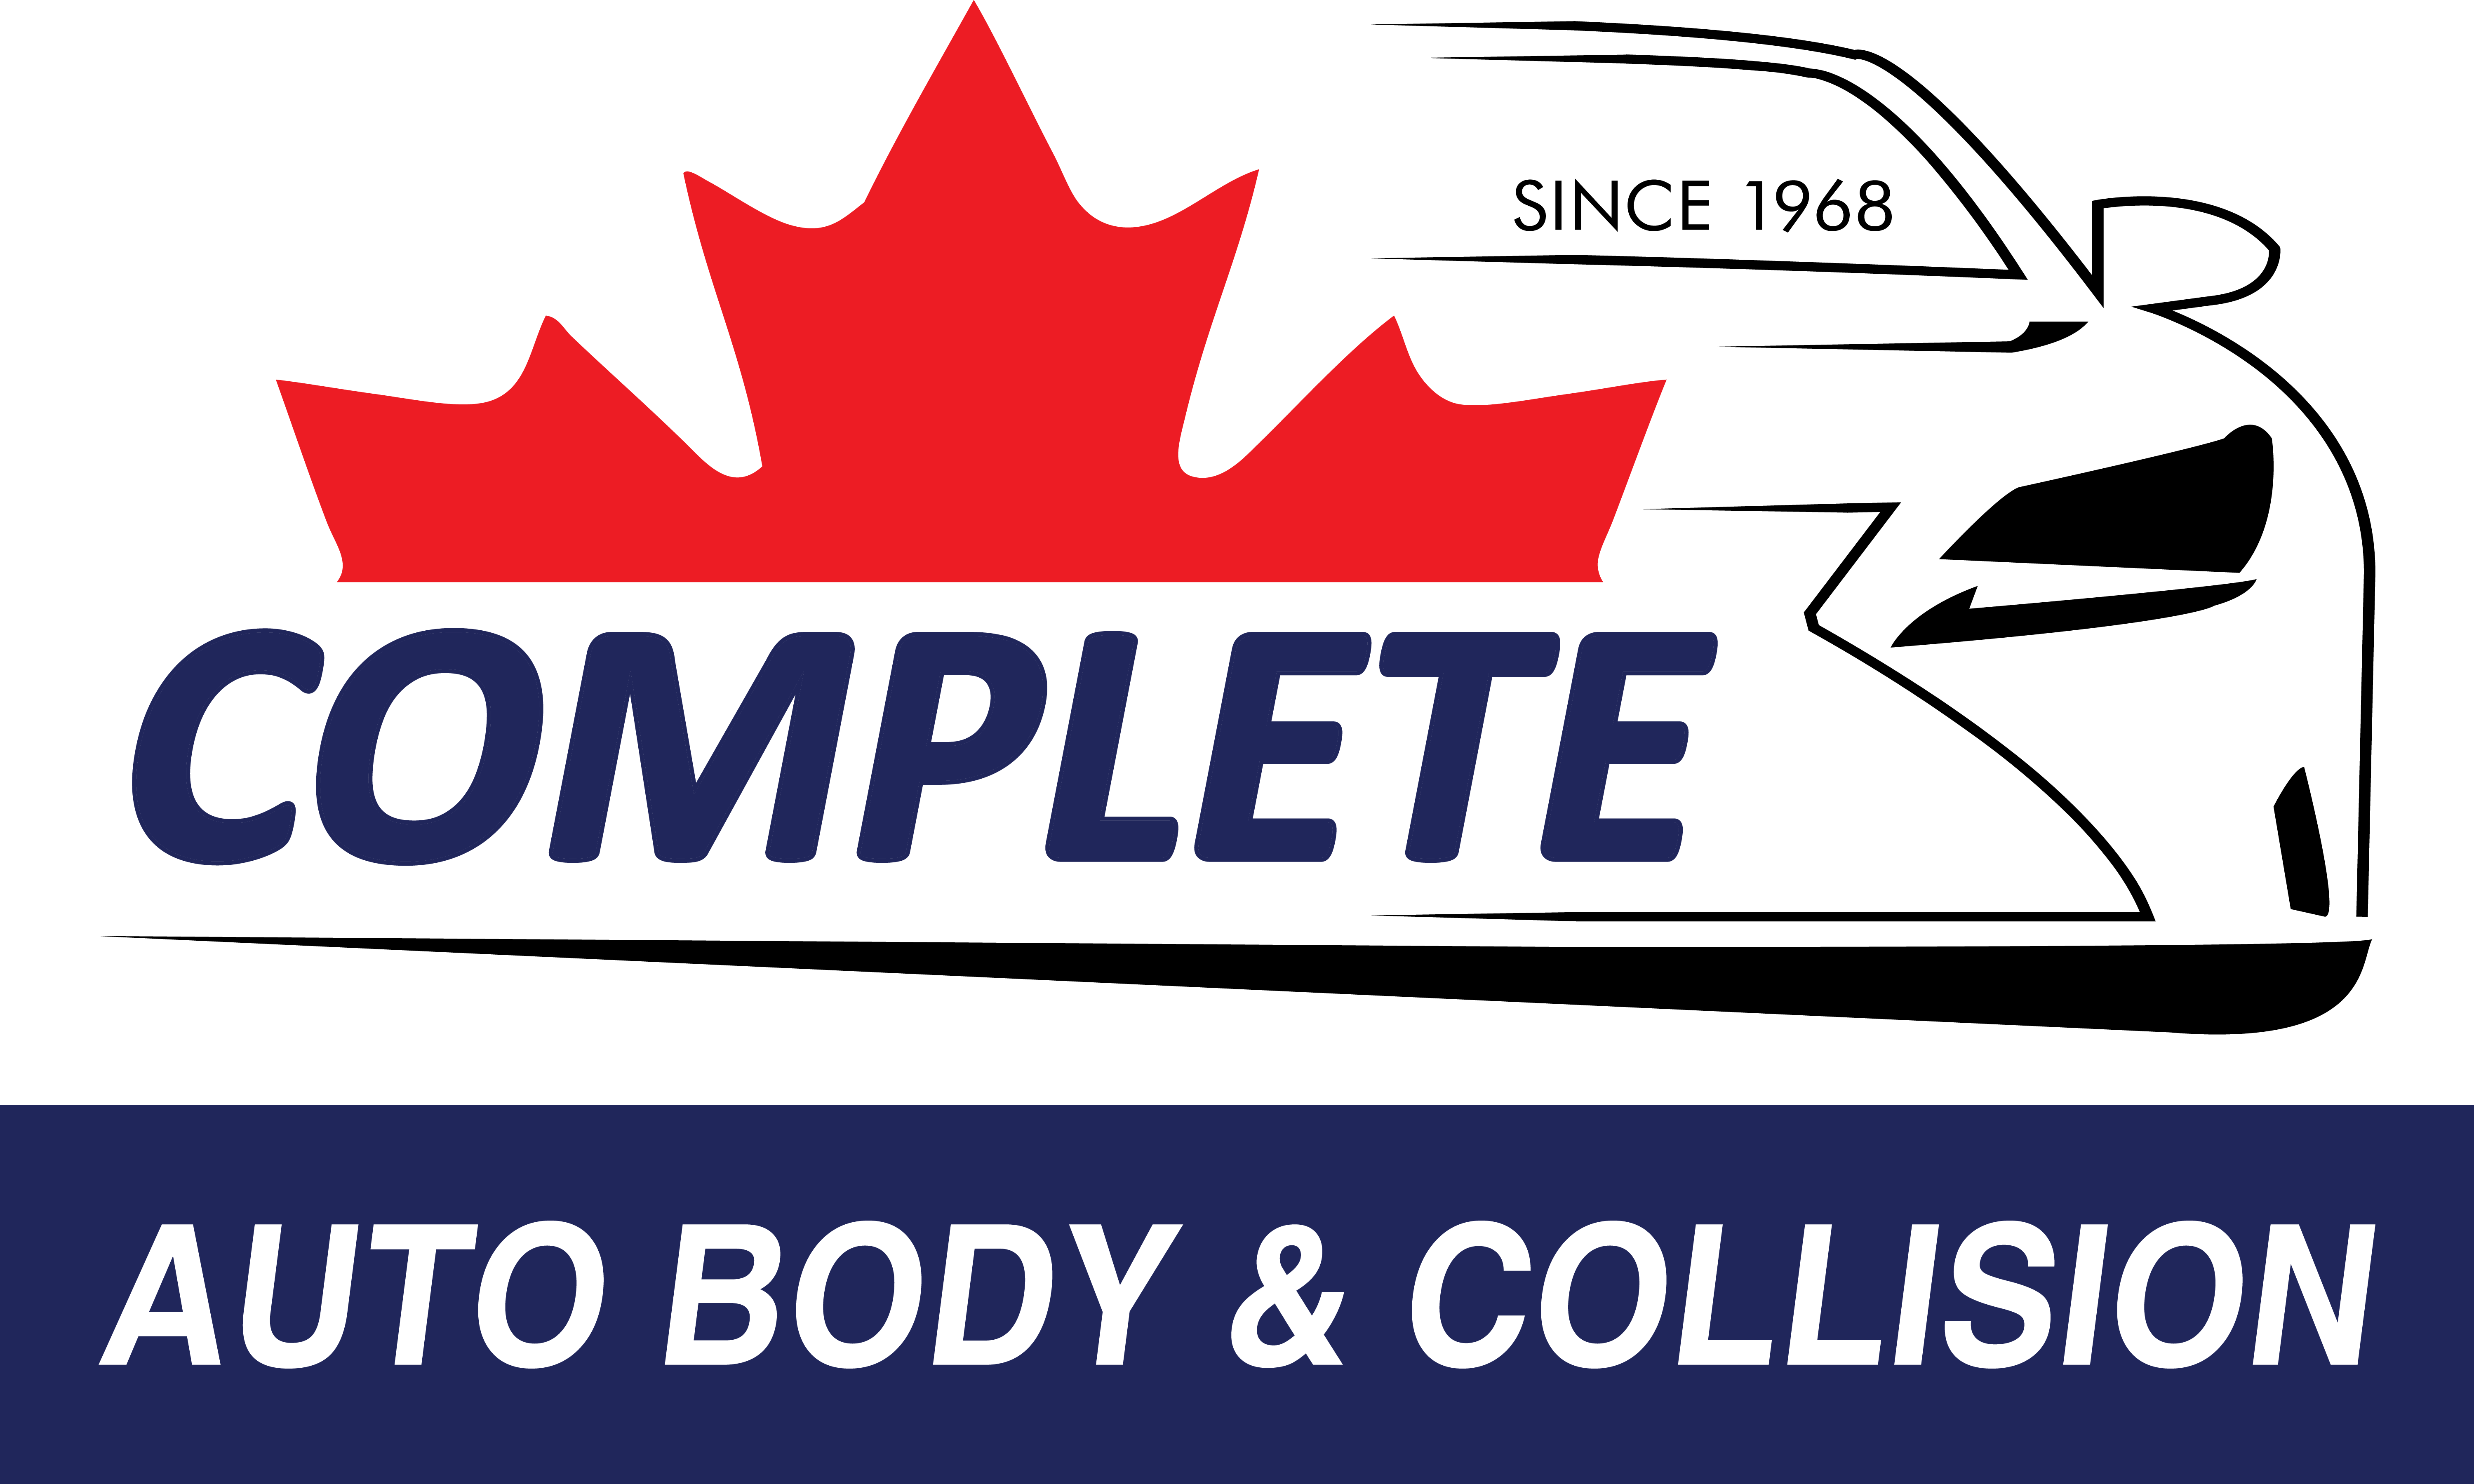 Complete Auto Body & Collision